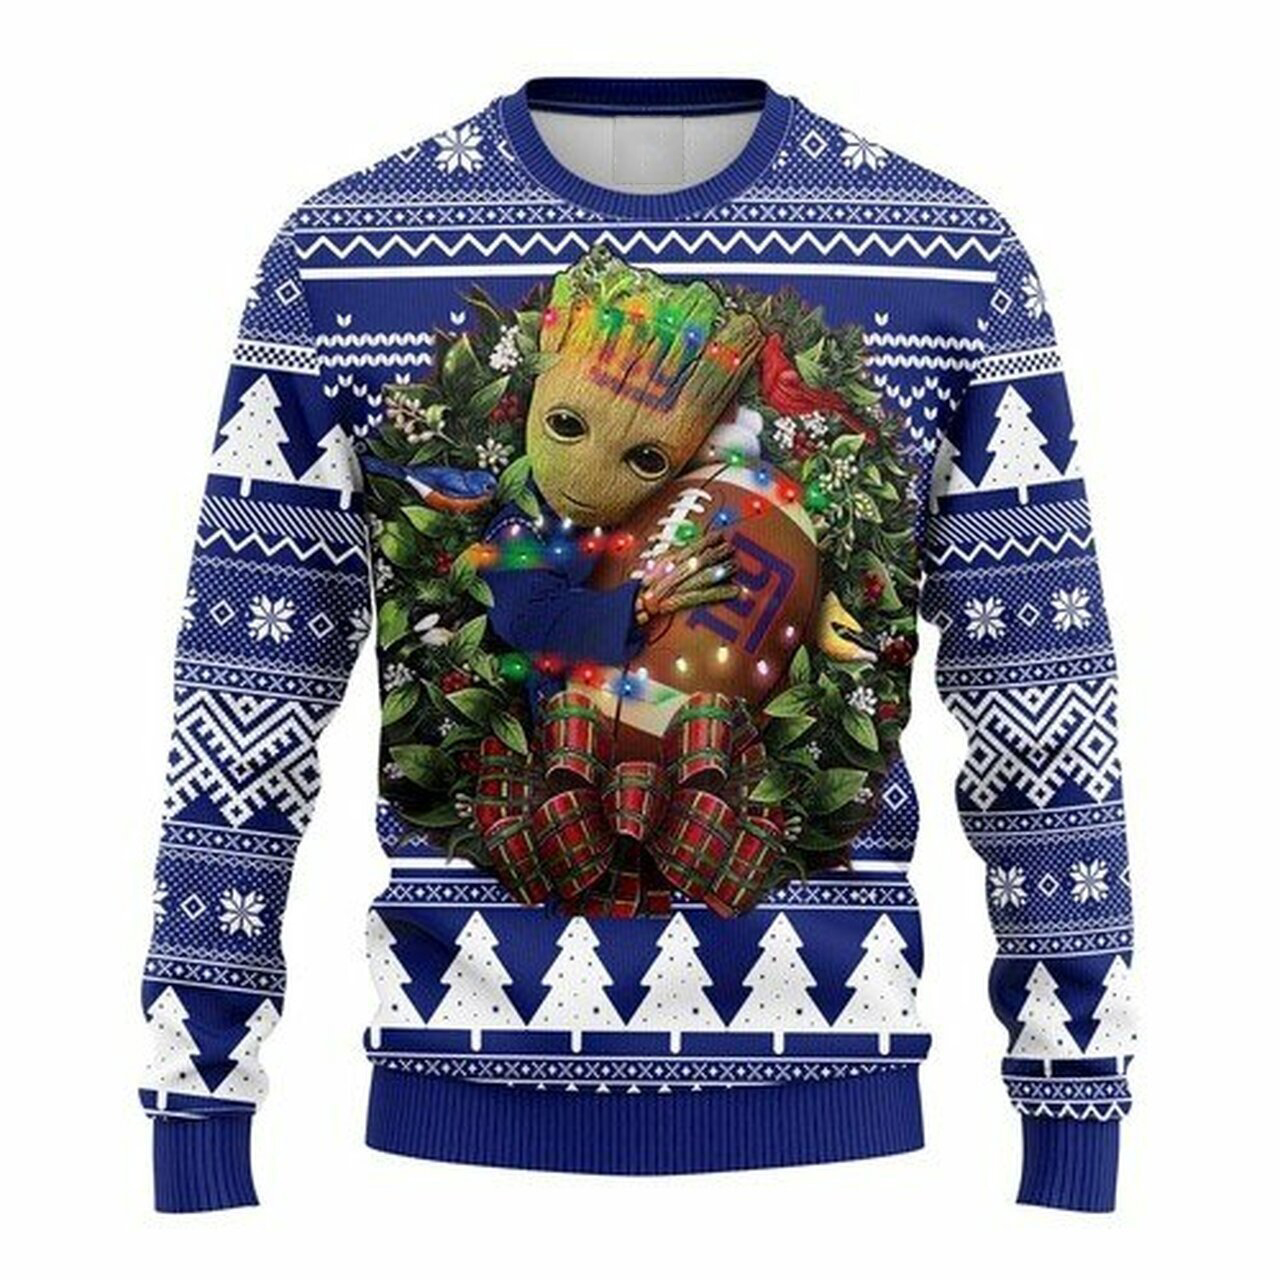 [ HOT ] NFL New York Giants Groot hug ugly christmas sweater – Saleoff 040122